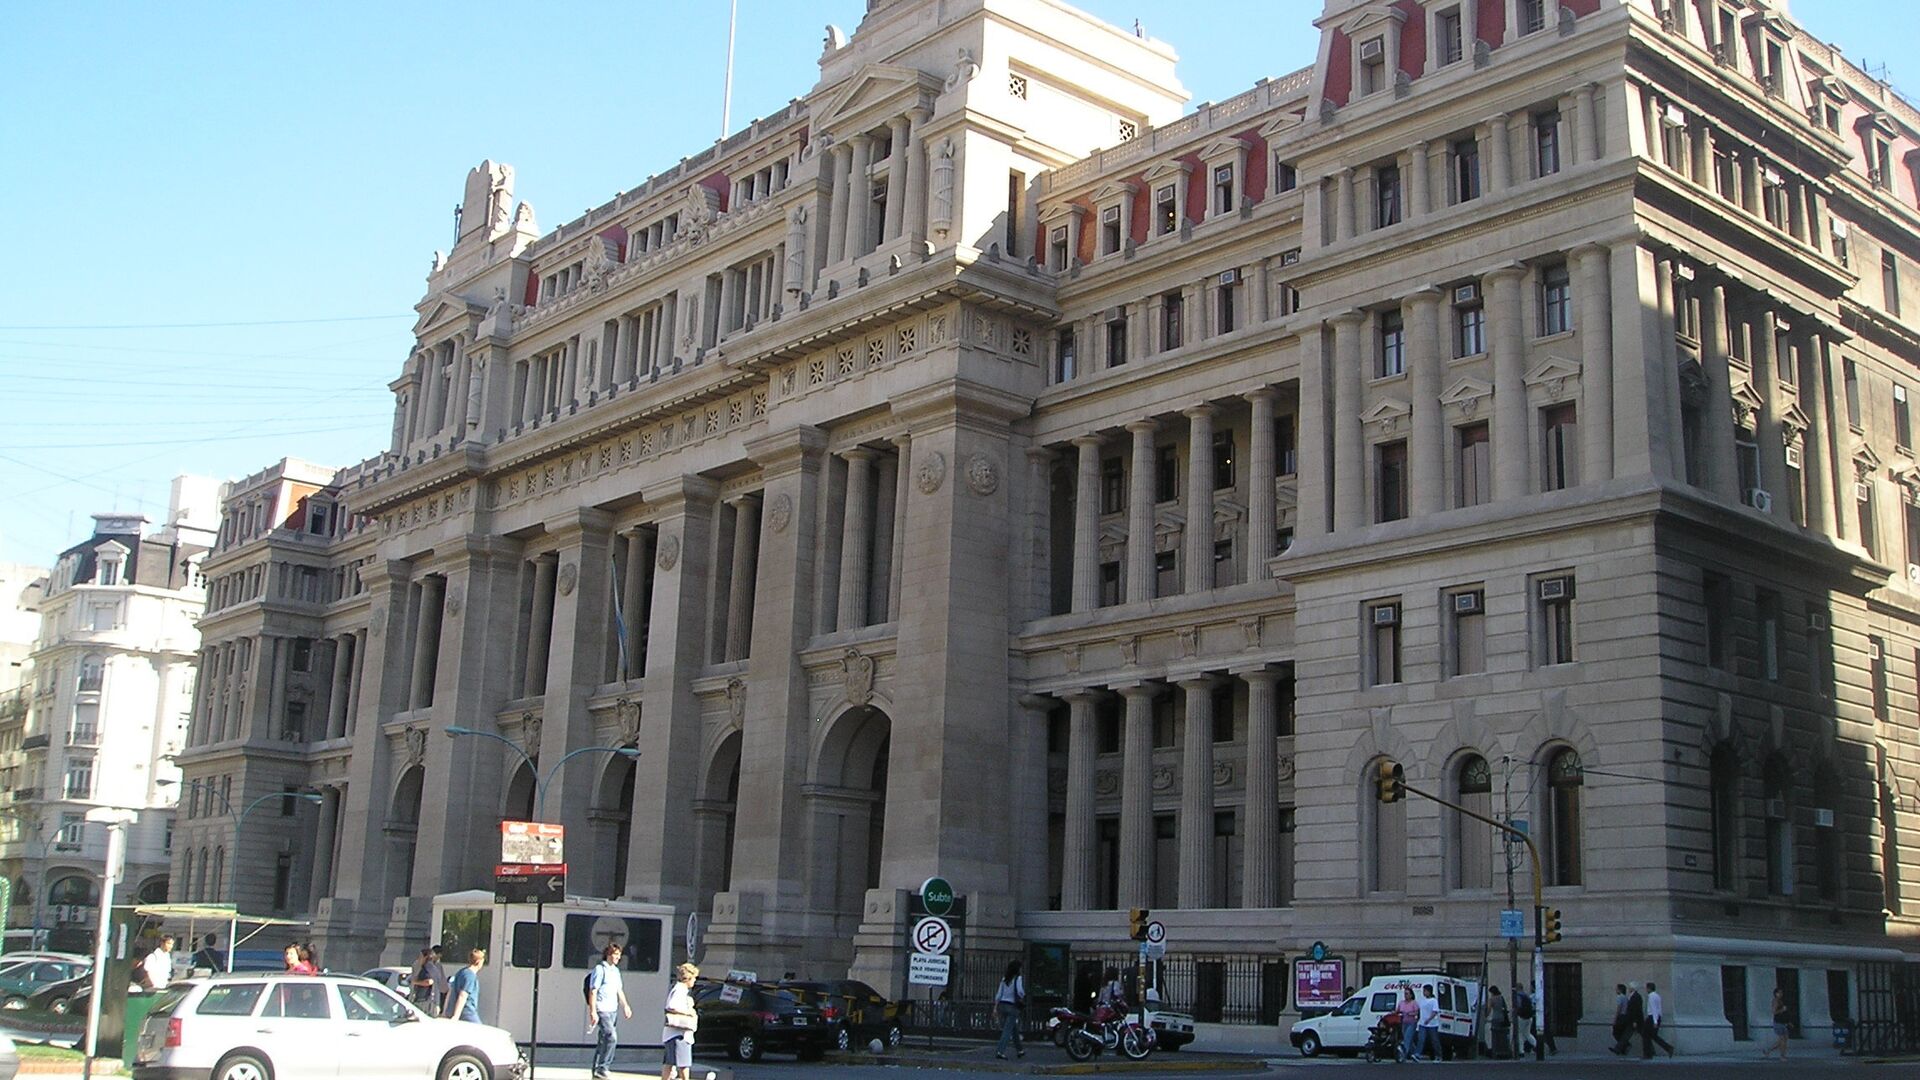 Palacio de Justicia, sede de la Corte Suprema de Justicia de Argentina - Sputnik Mundo, 1920, 16.12.2021